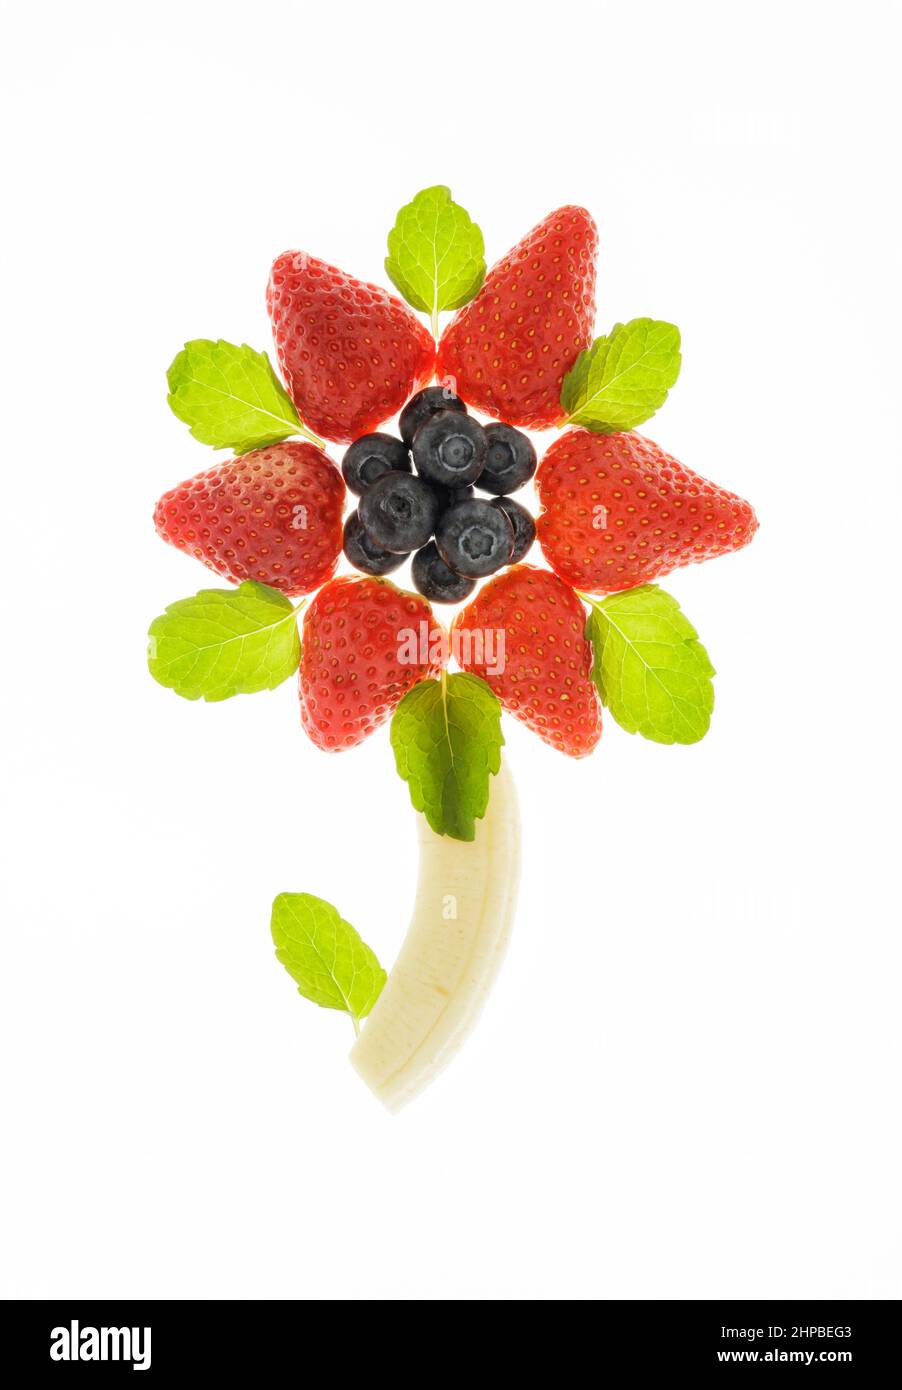 Arándanos frescos, fresas y plátanos dispuestos en forma de flor Foto de stock